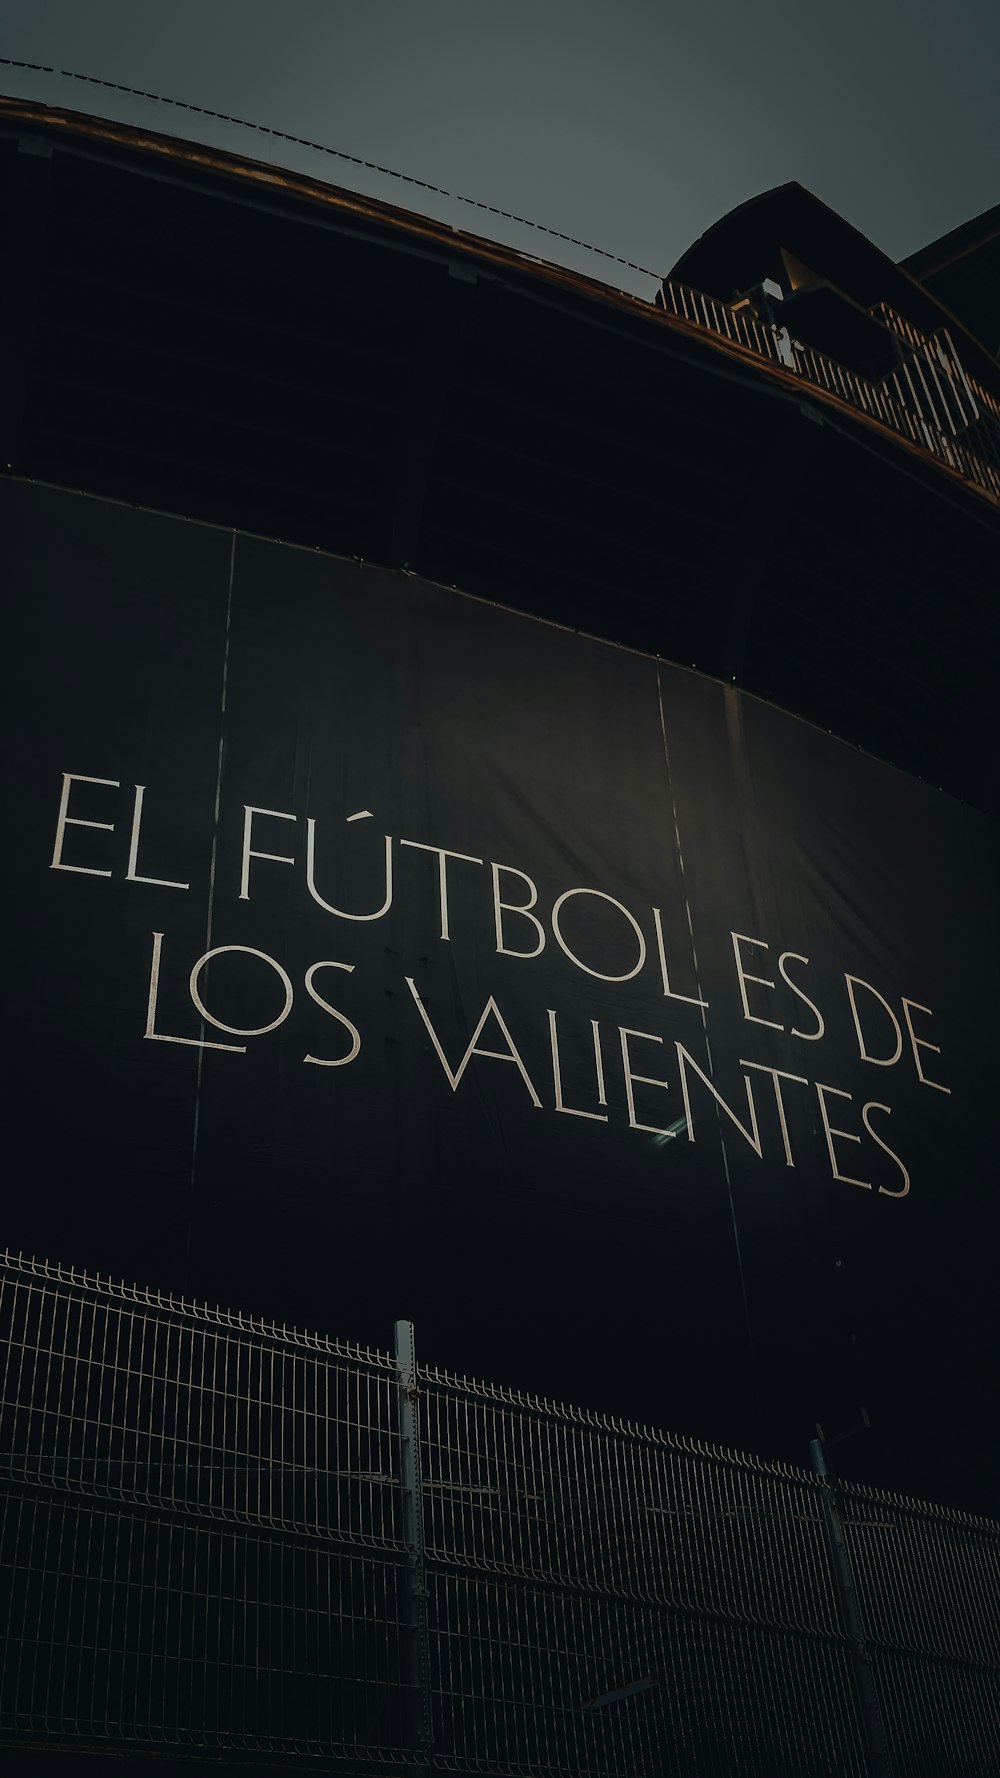 Ein Schild an der Seite eines Gebäudes, auf dem El Futolos de los steht